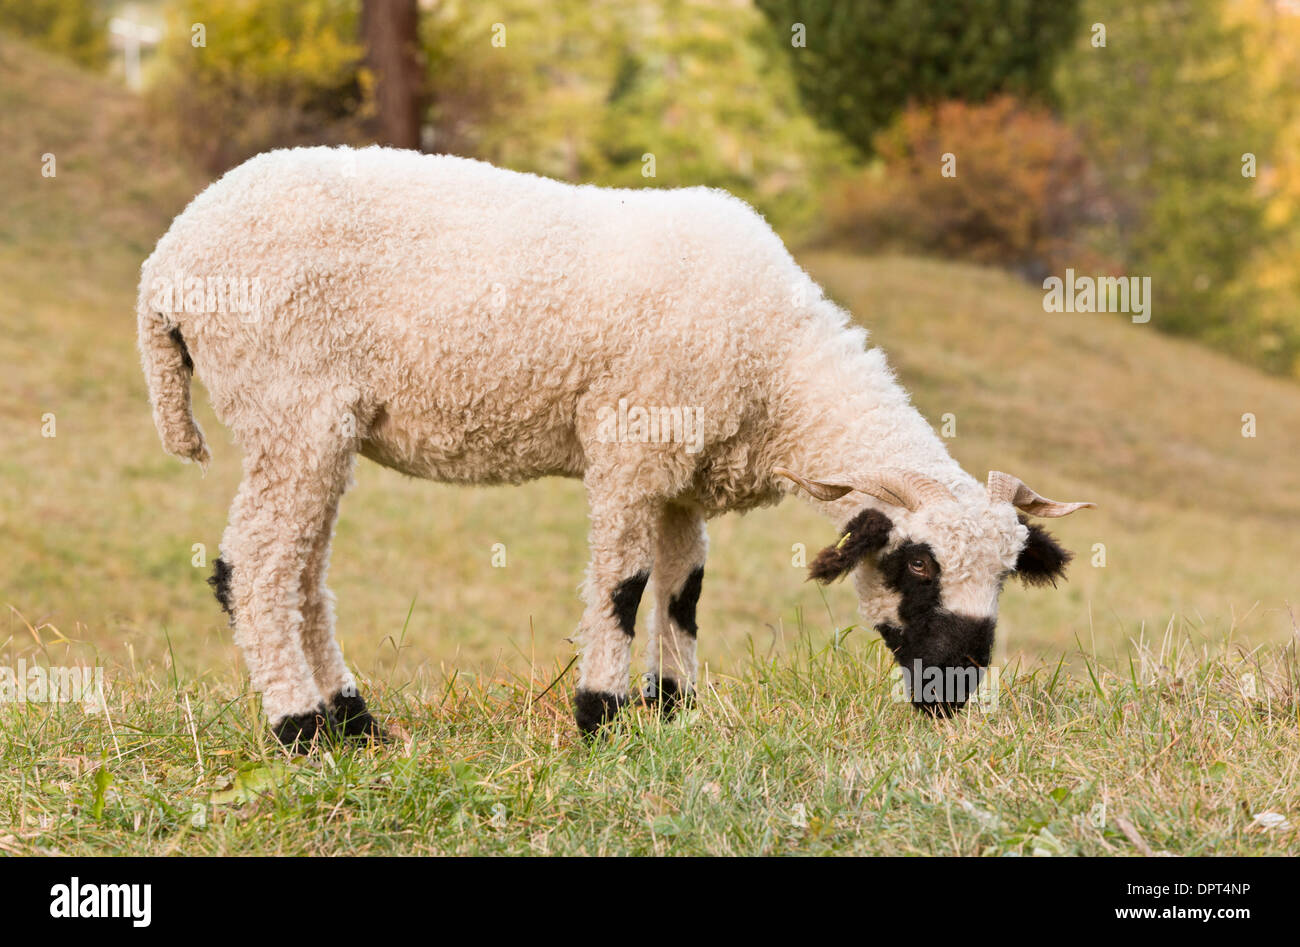 Valais Blacknose Schafe oder Walliser Schwarznasenschaf, einem doppelten  Zweck (Fleisch und Wolle) Rasse, Zermatt, Wallis, Schweiz Stockfotografie -  Alamy